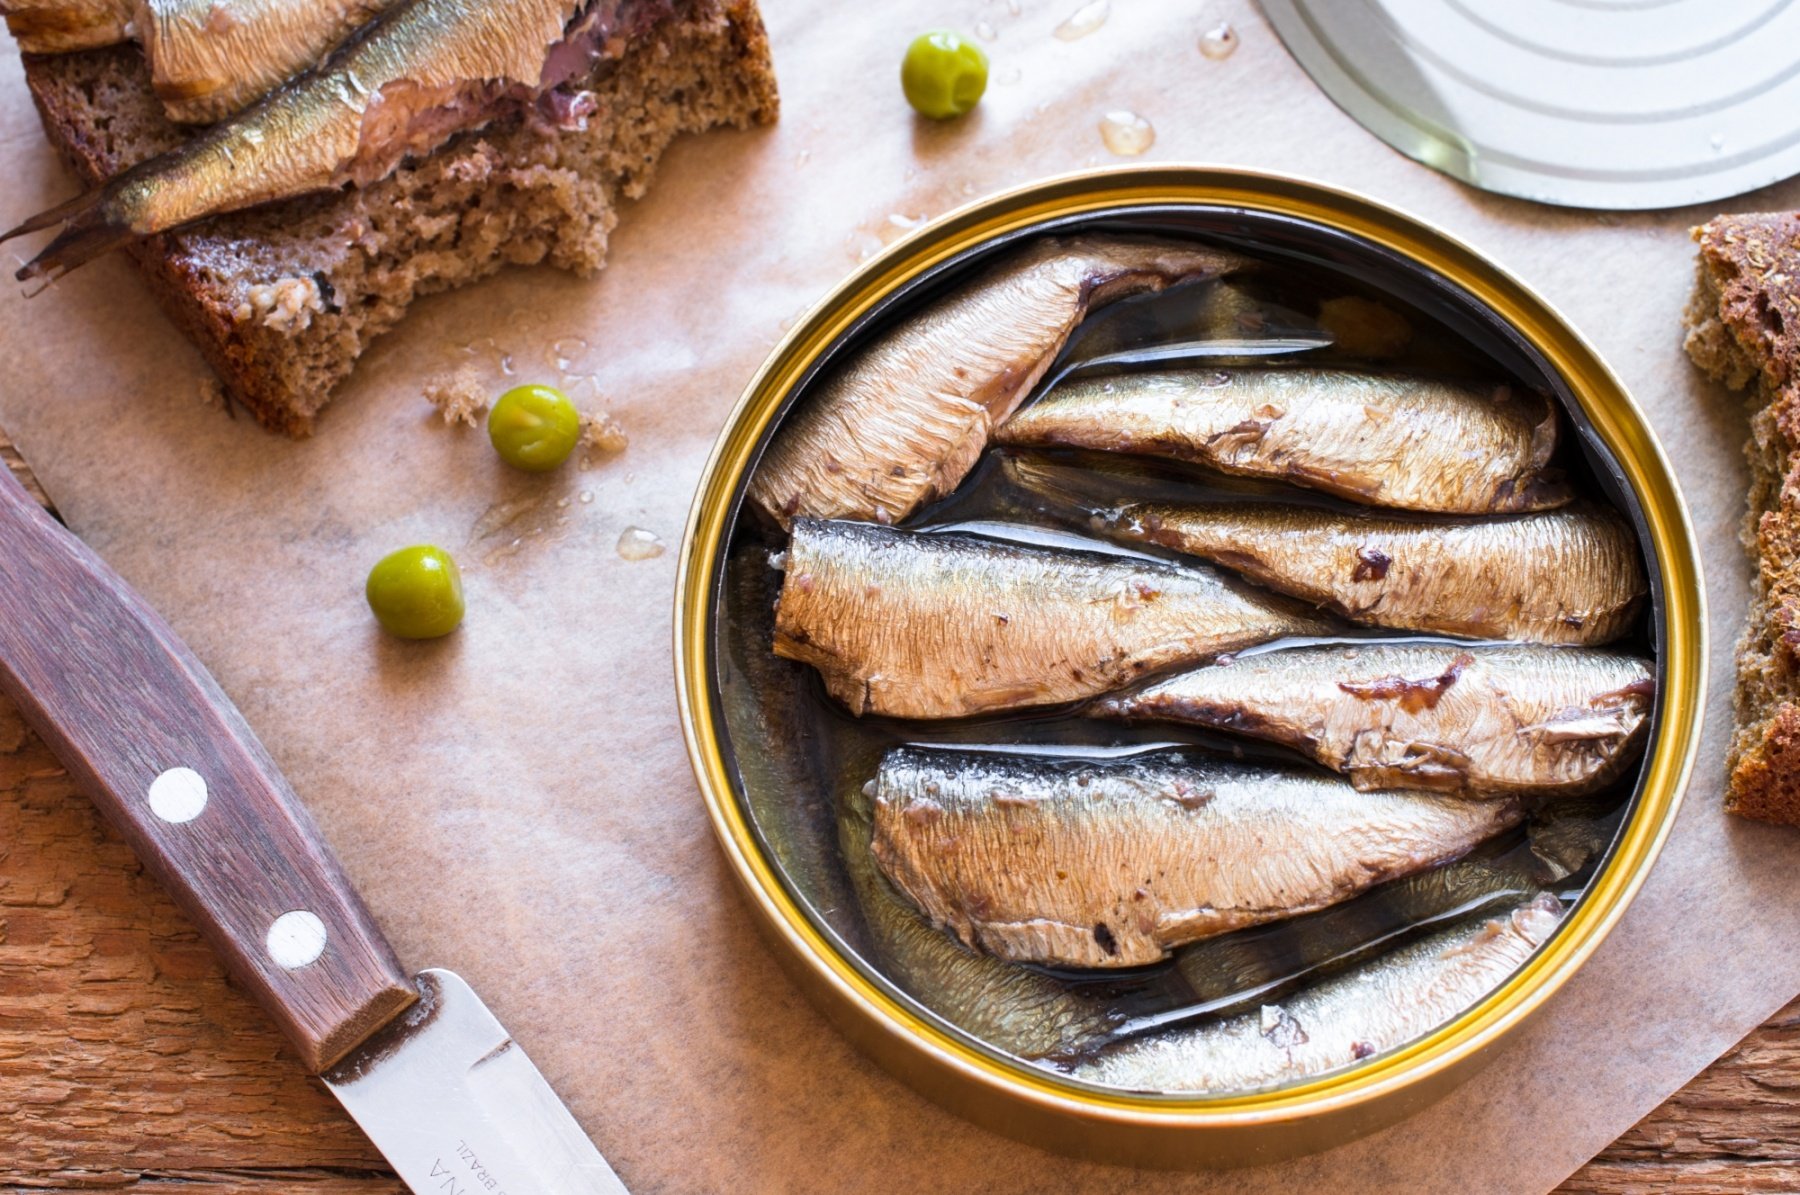 La sardine millésimée, un produit d'exception